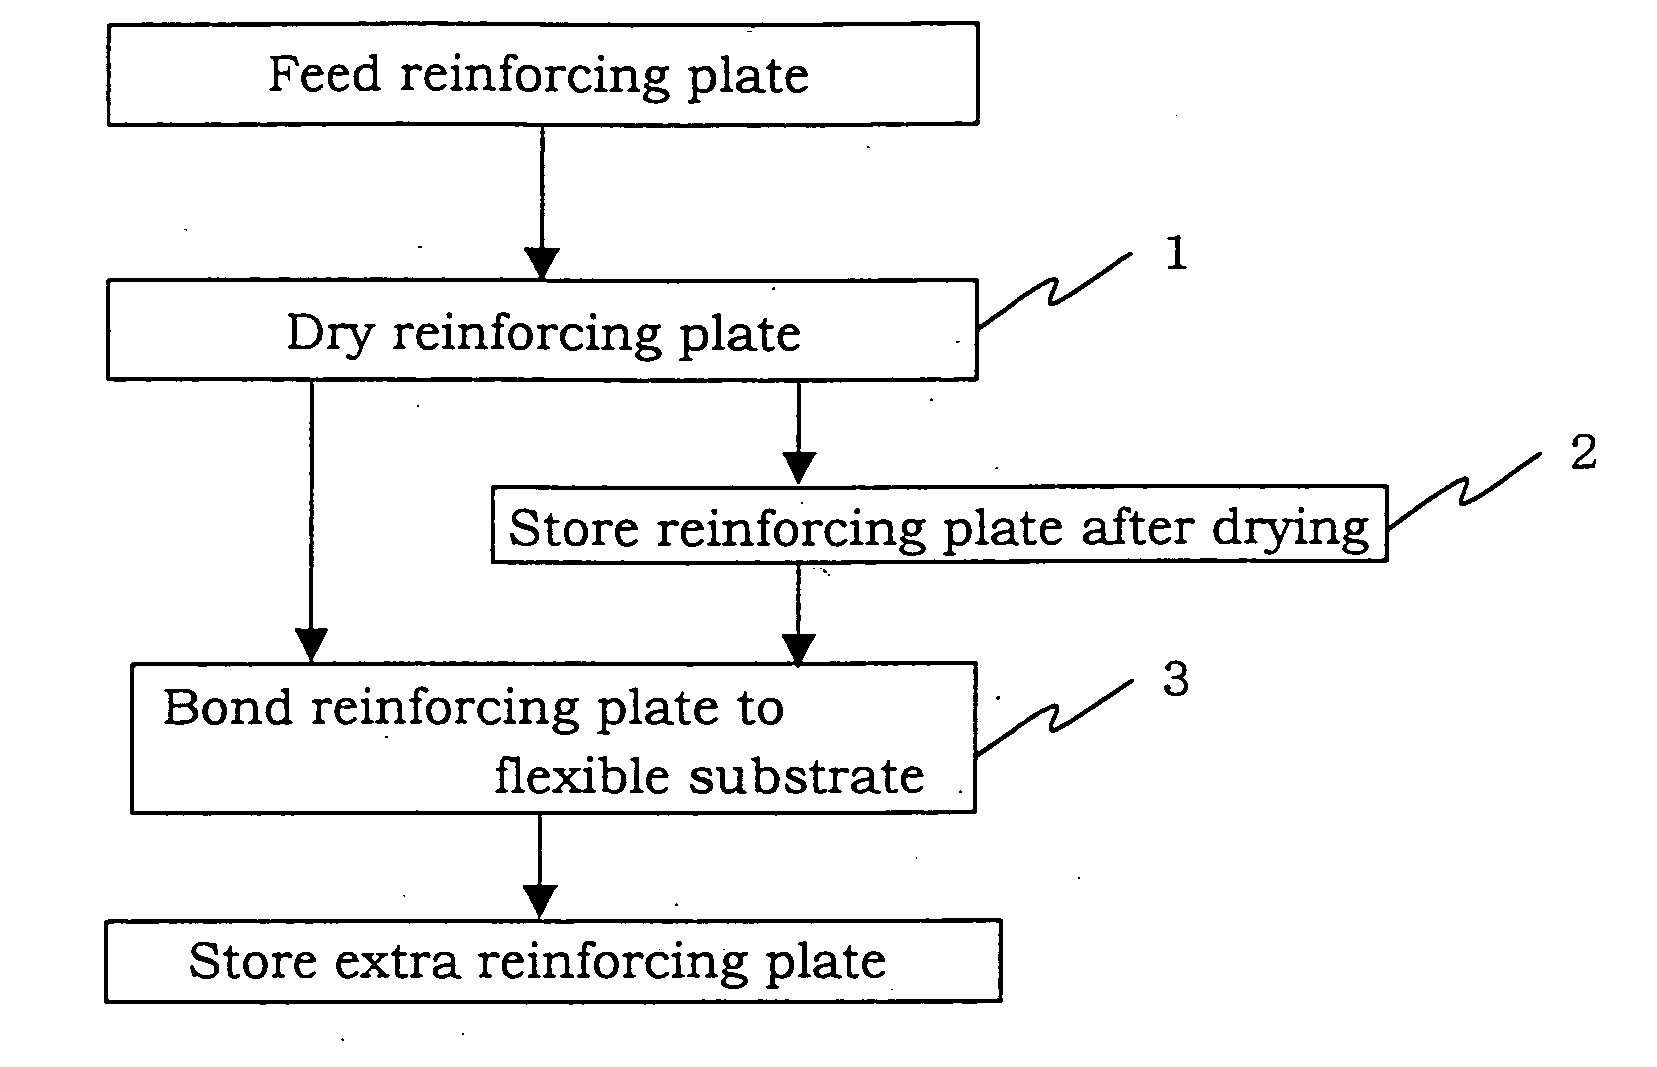 Method for bonding reinforcing plate